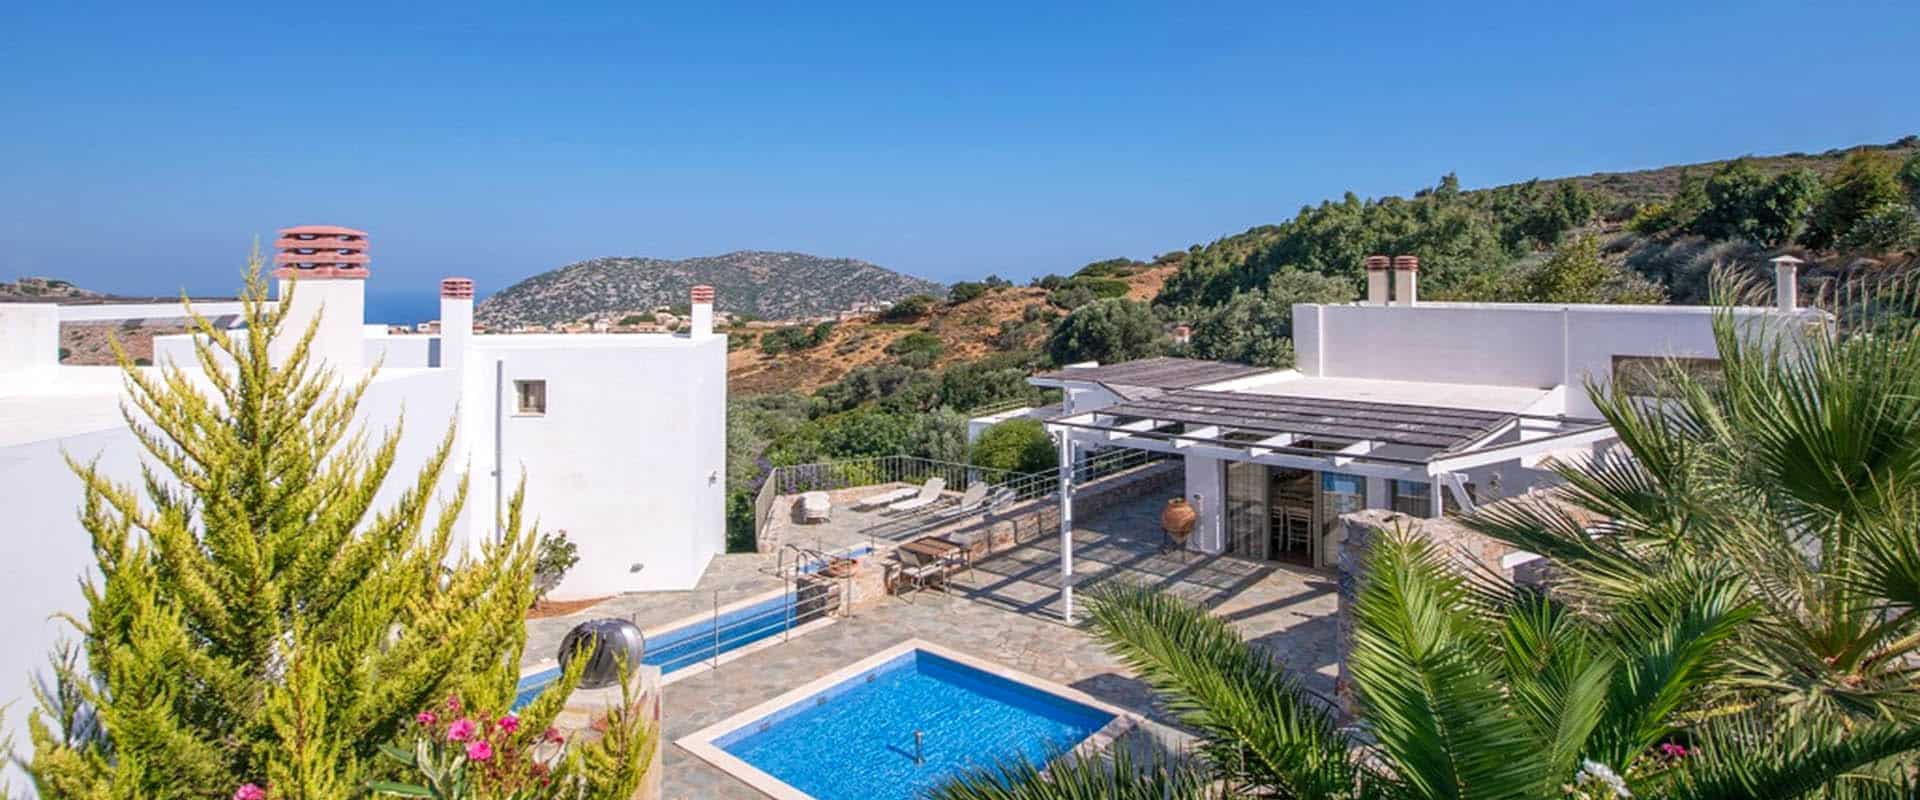 ecoturismo vacaciones hotel turismo sostenible Creta Grecia